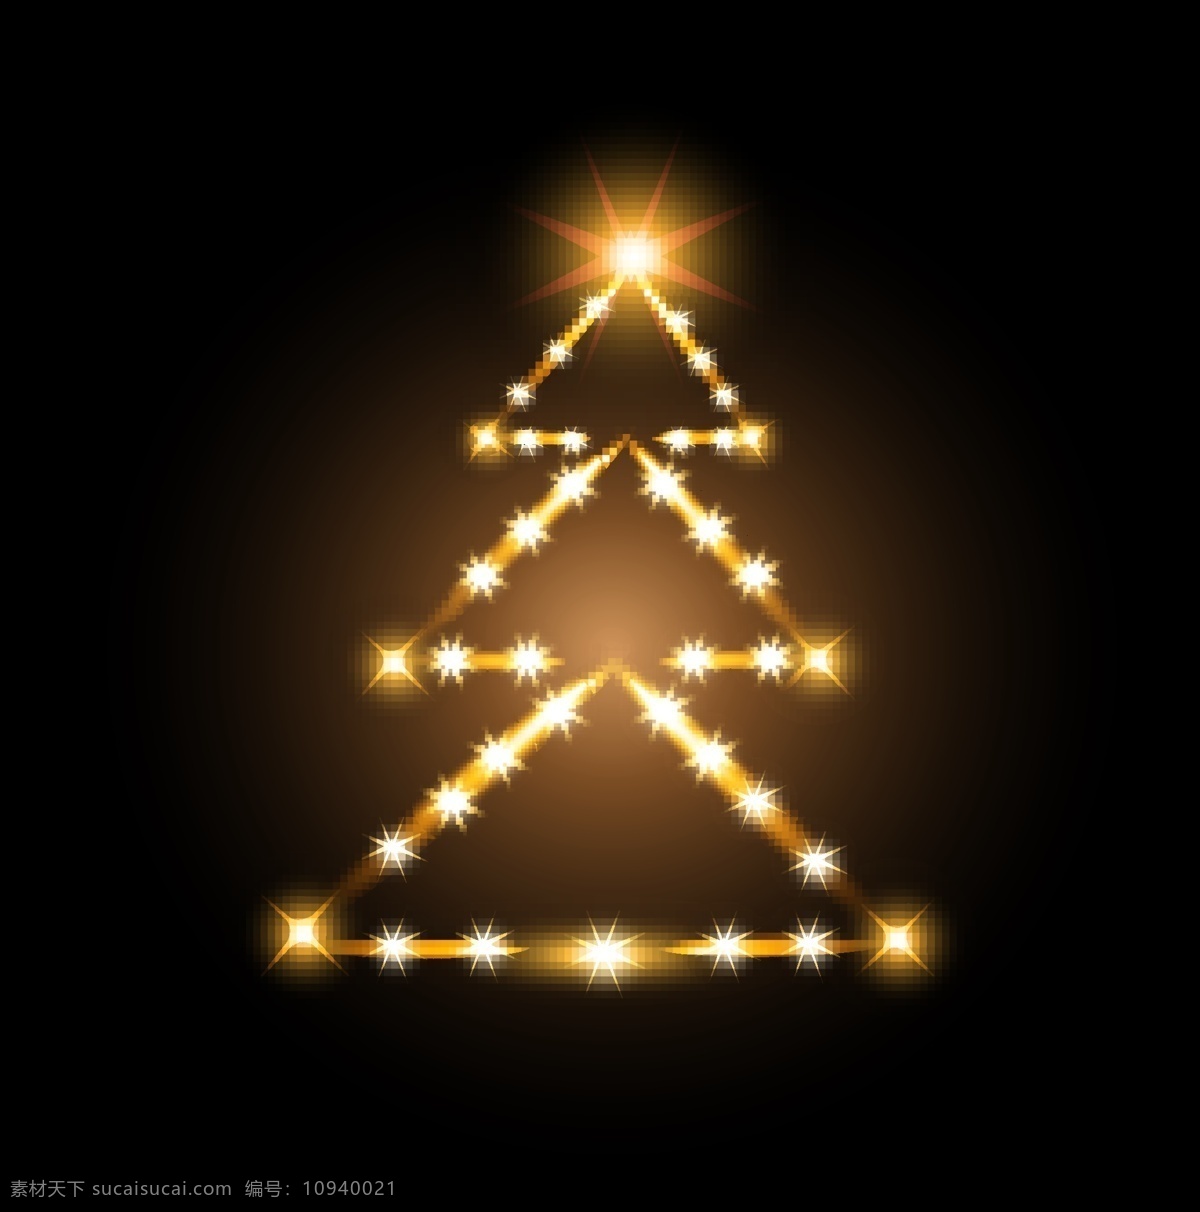 矢量 发光 圣诞树 设计素材 背景 创意设计 光芒 梦幻 圣诞节 矢量素材 星光 节日素材